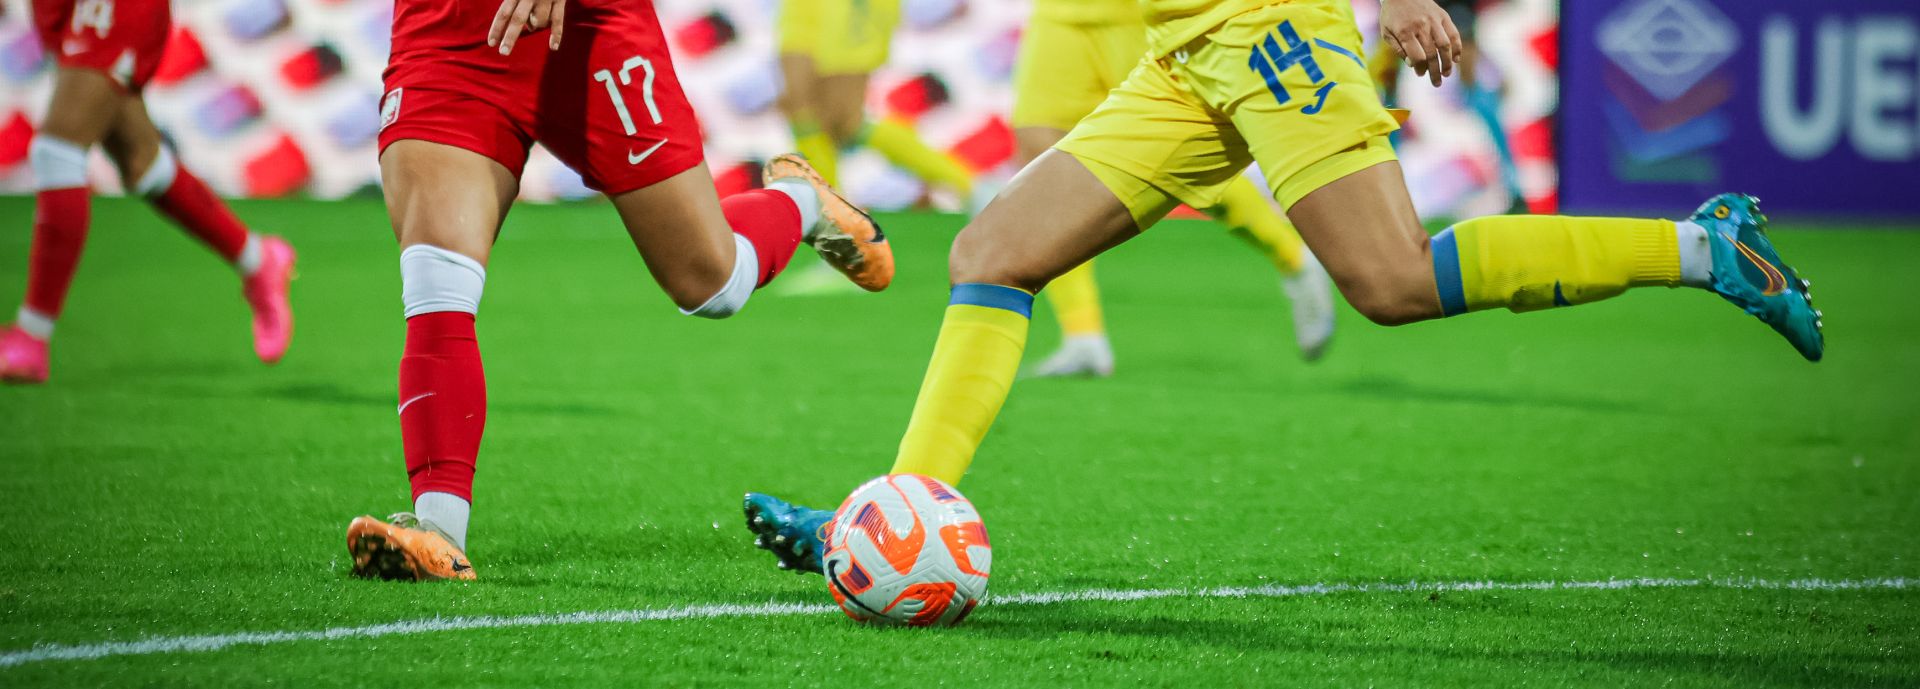 Reprezentantka Ukrainy kopiąca piłkę podczas meczu Polska Ukraina 